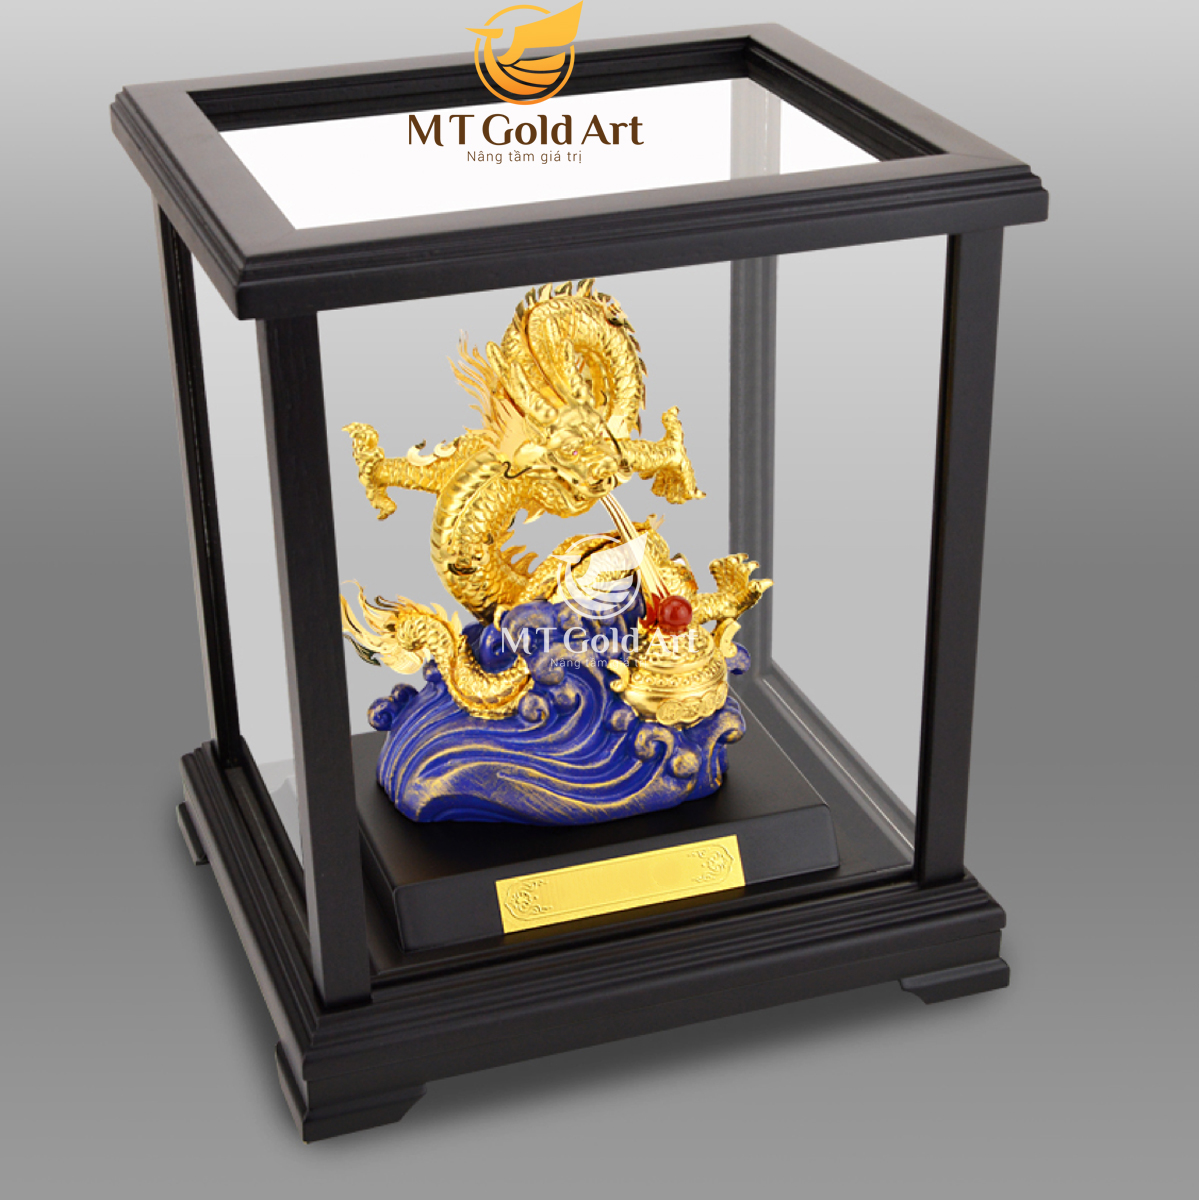 Hình ảnh Tượng Rồng phong thủy nhả ngọc dát vàng MT Gold Art M02 (17x20x24cm)- Hàng chính hãng, quà tặng dành cho sếp, khách hàng, đối tác